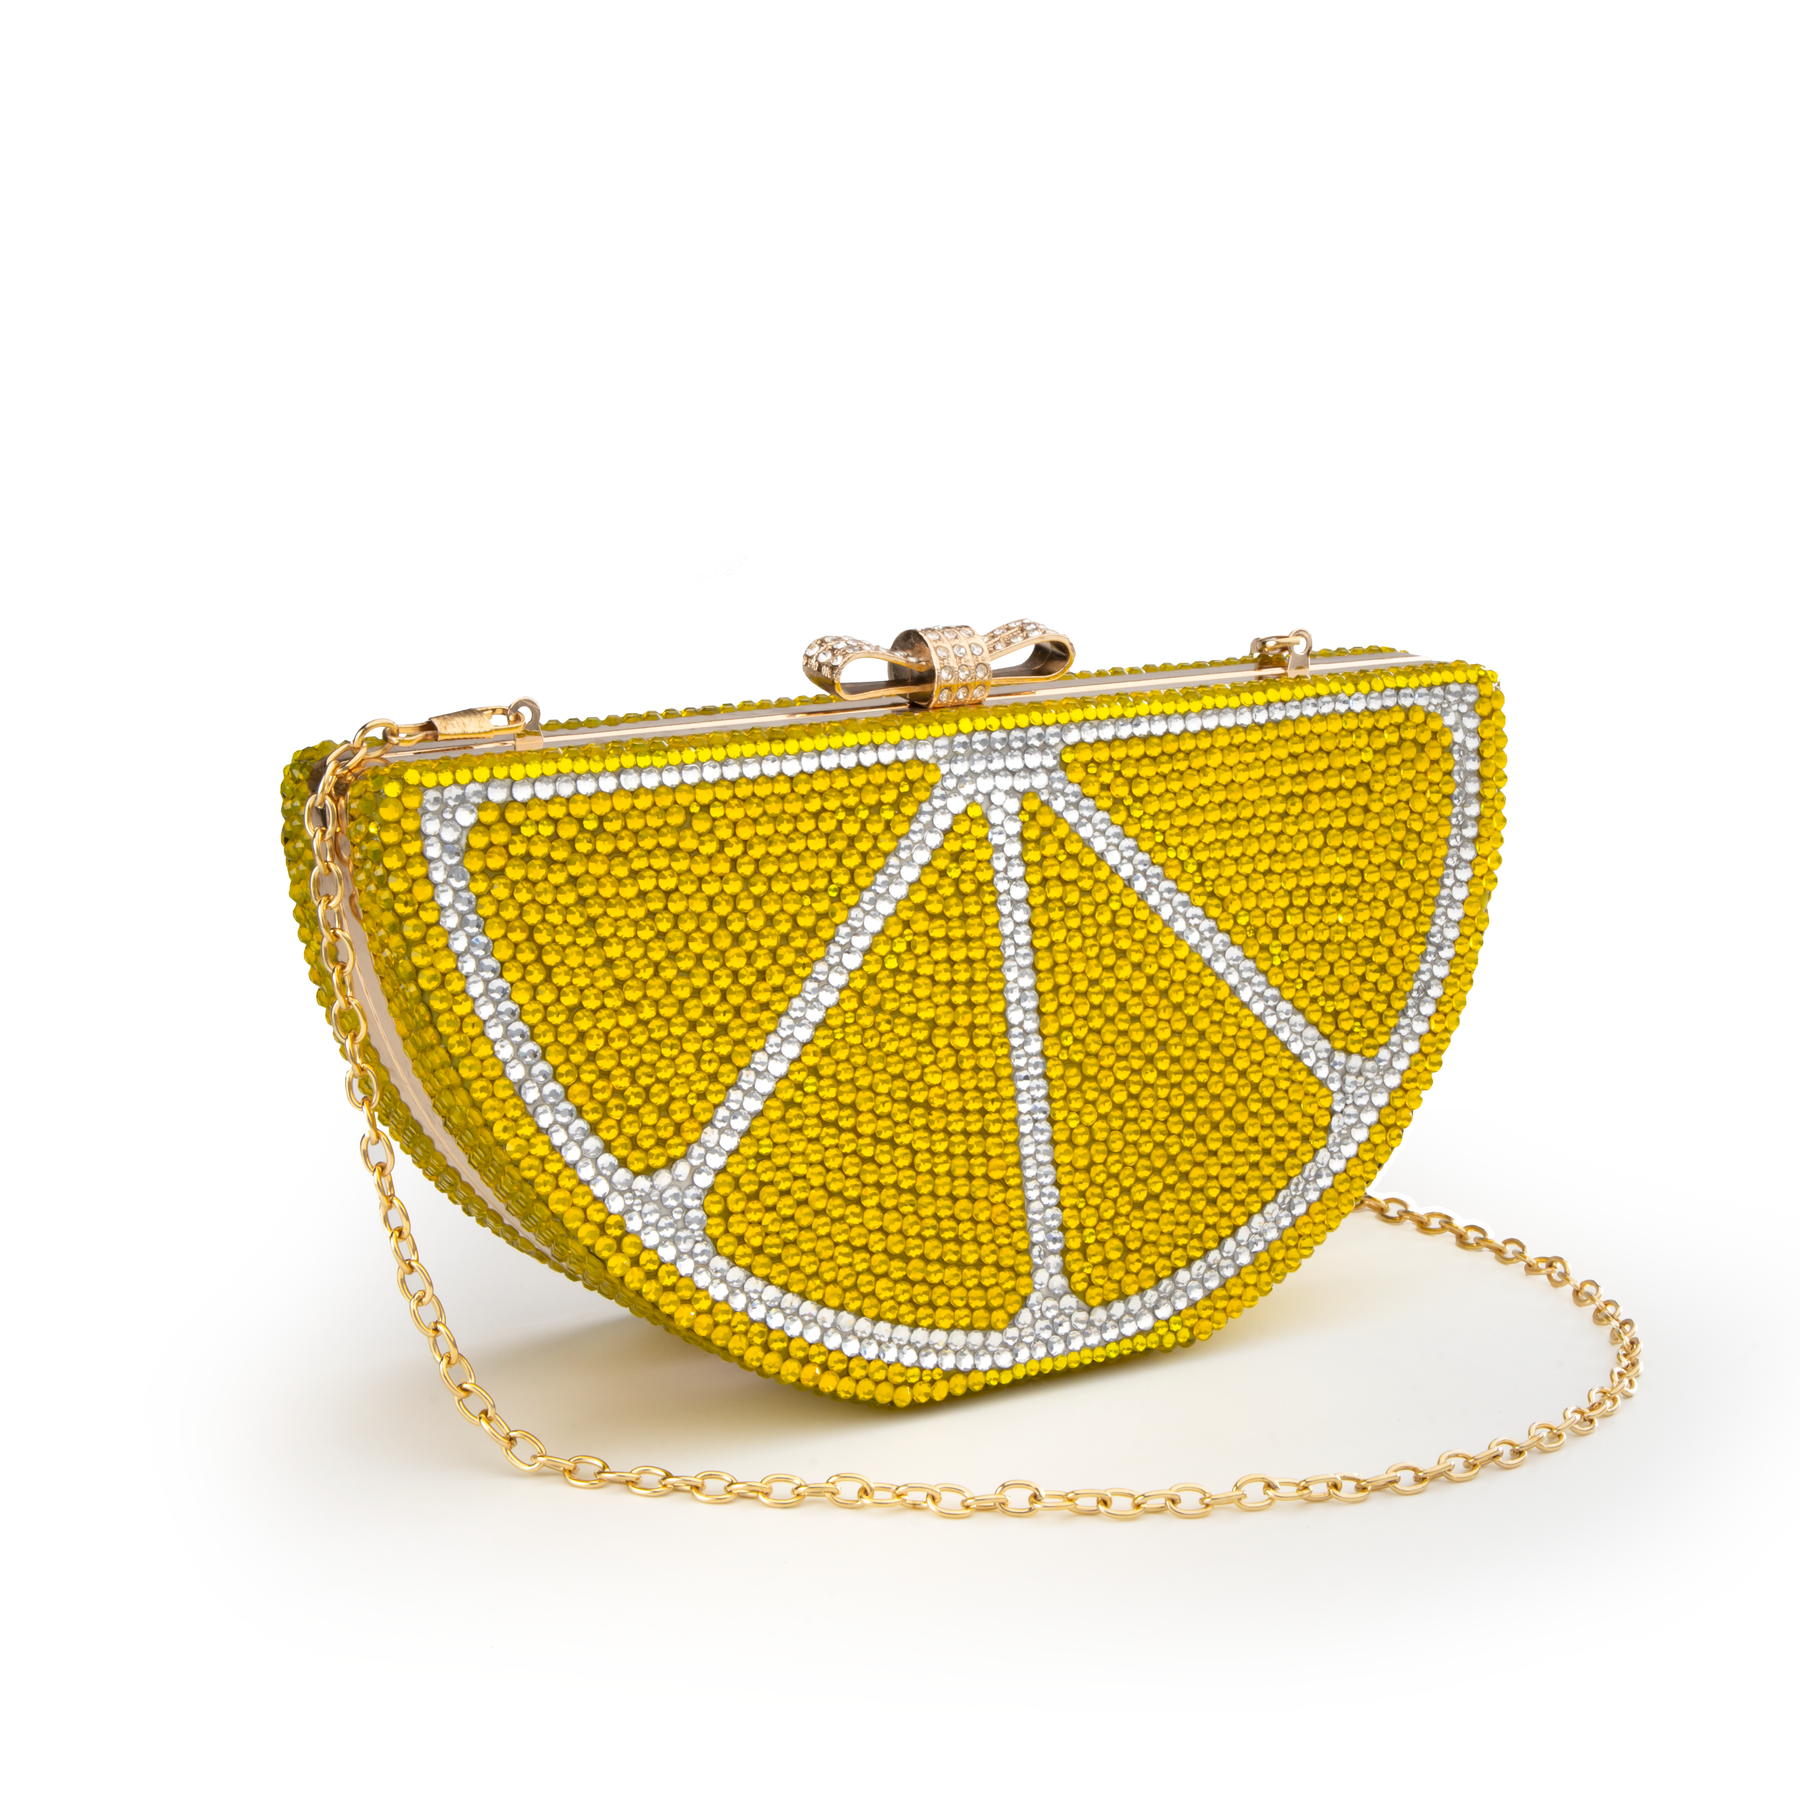 Lemon shaped clutch bags - Lemon bags - Fruit trend